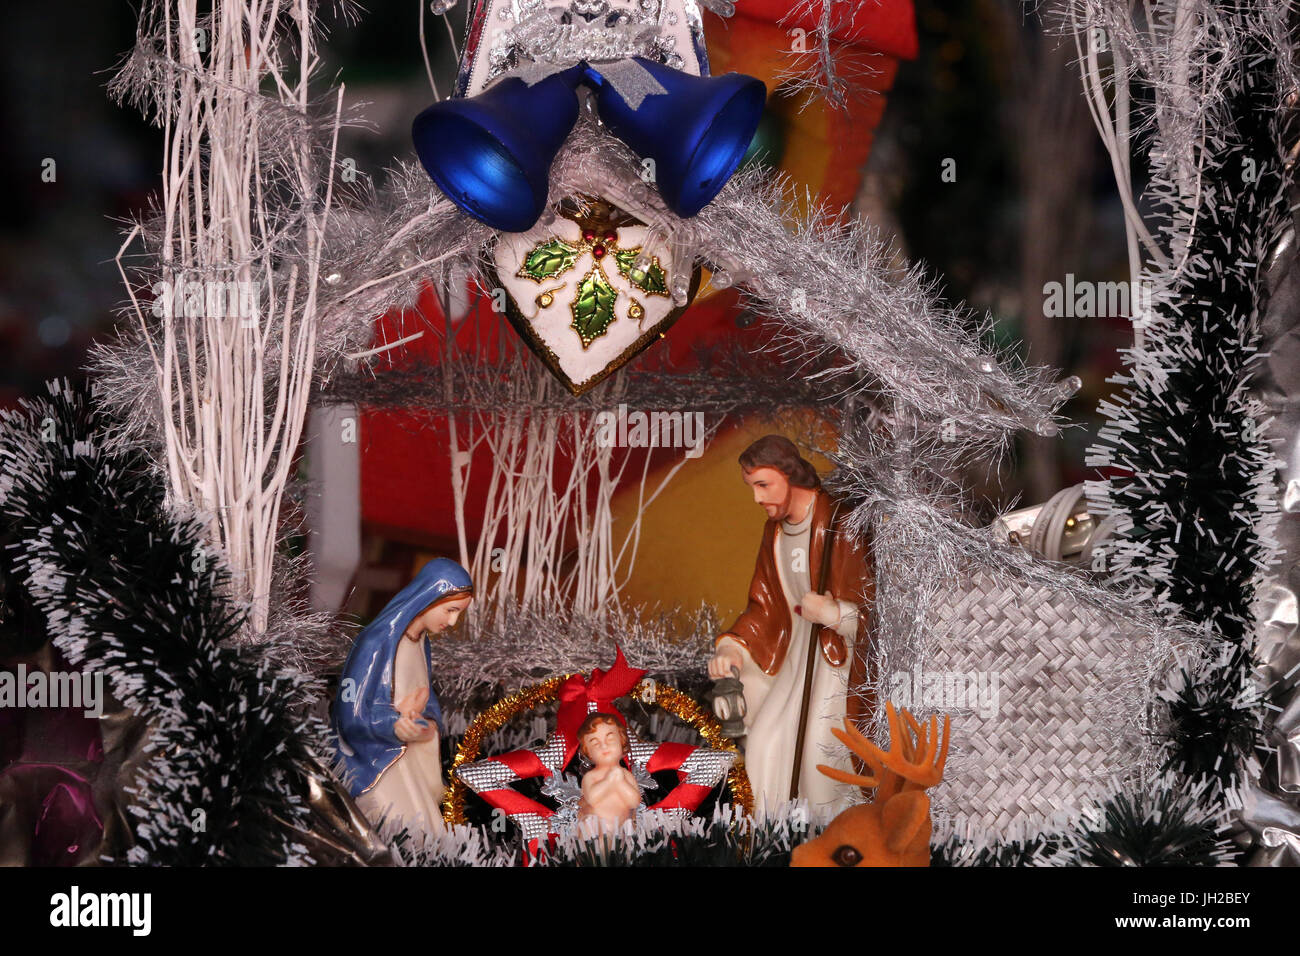 Christmas market.  Christmas crib with baby Jesus. Vietnam. Stock Photo